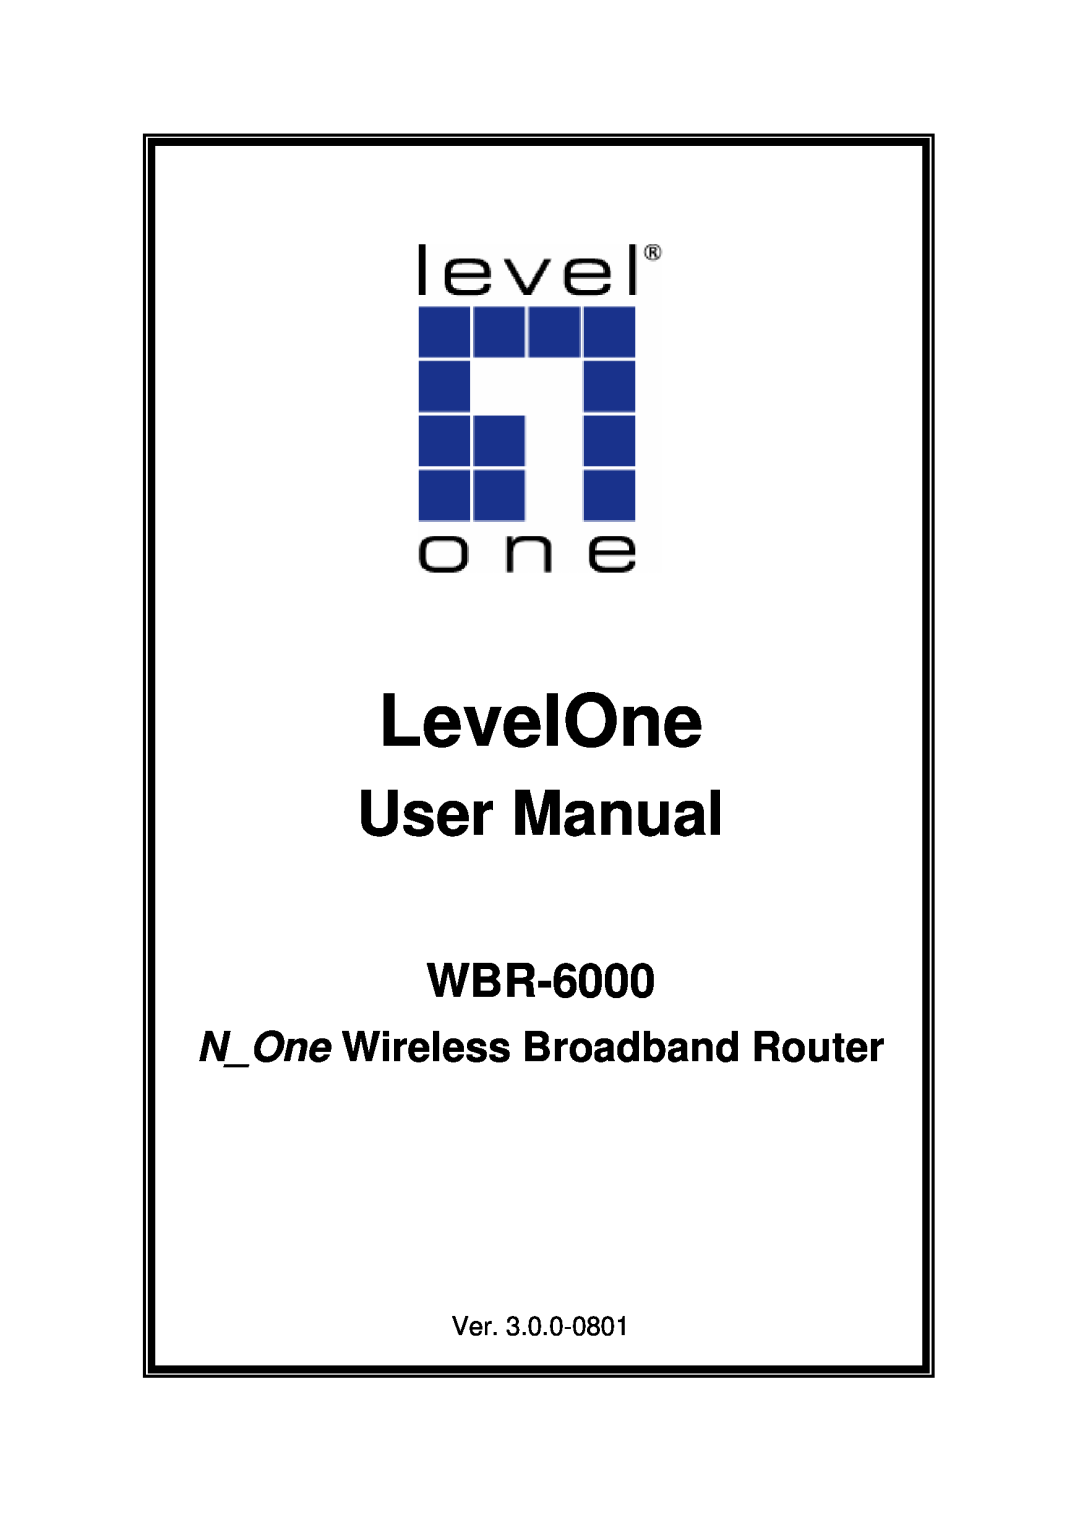 3Com WBR-6000 user manual NOne Wireless Broadband Router, LevelOne 